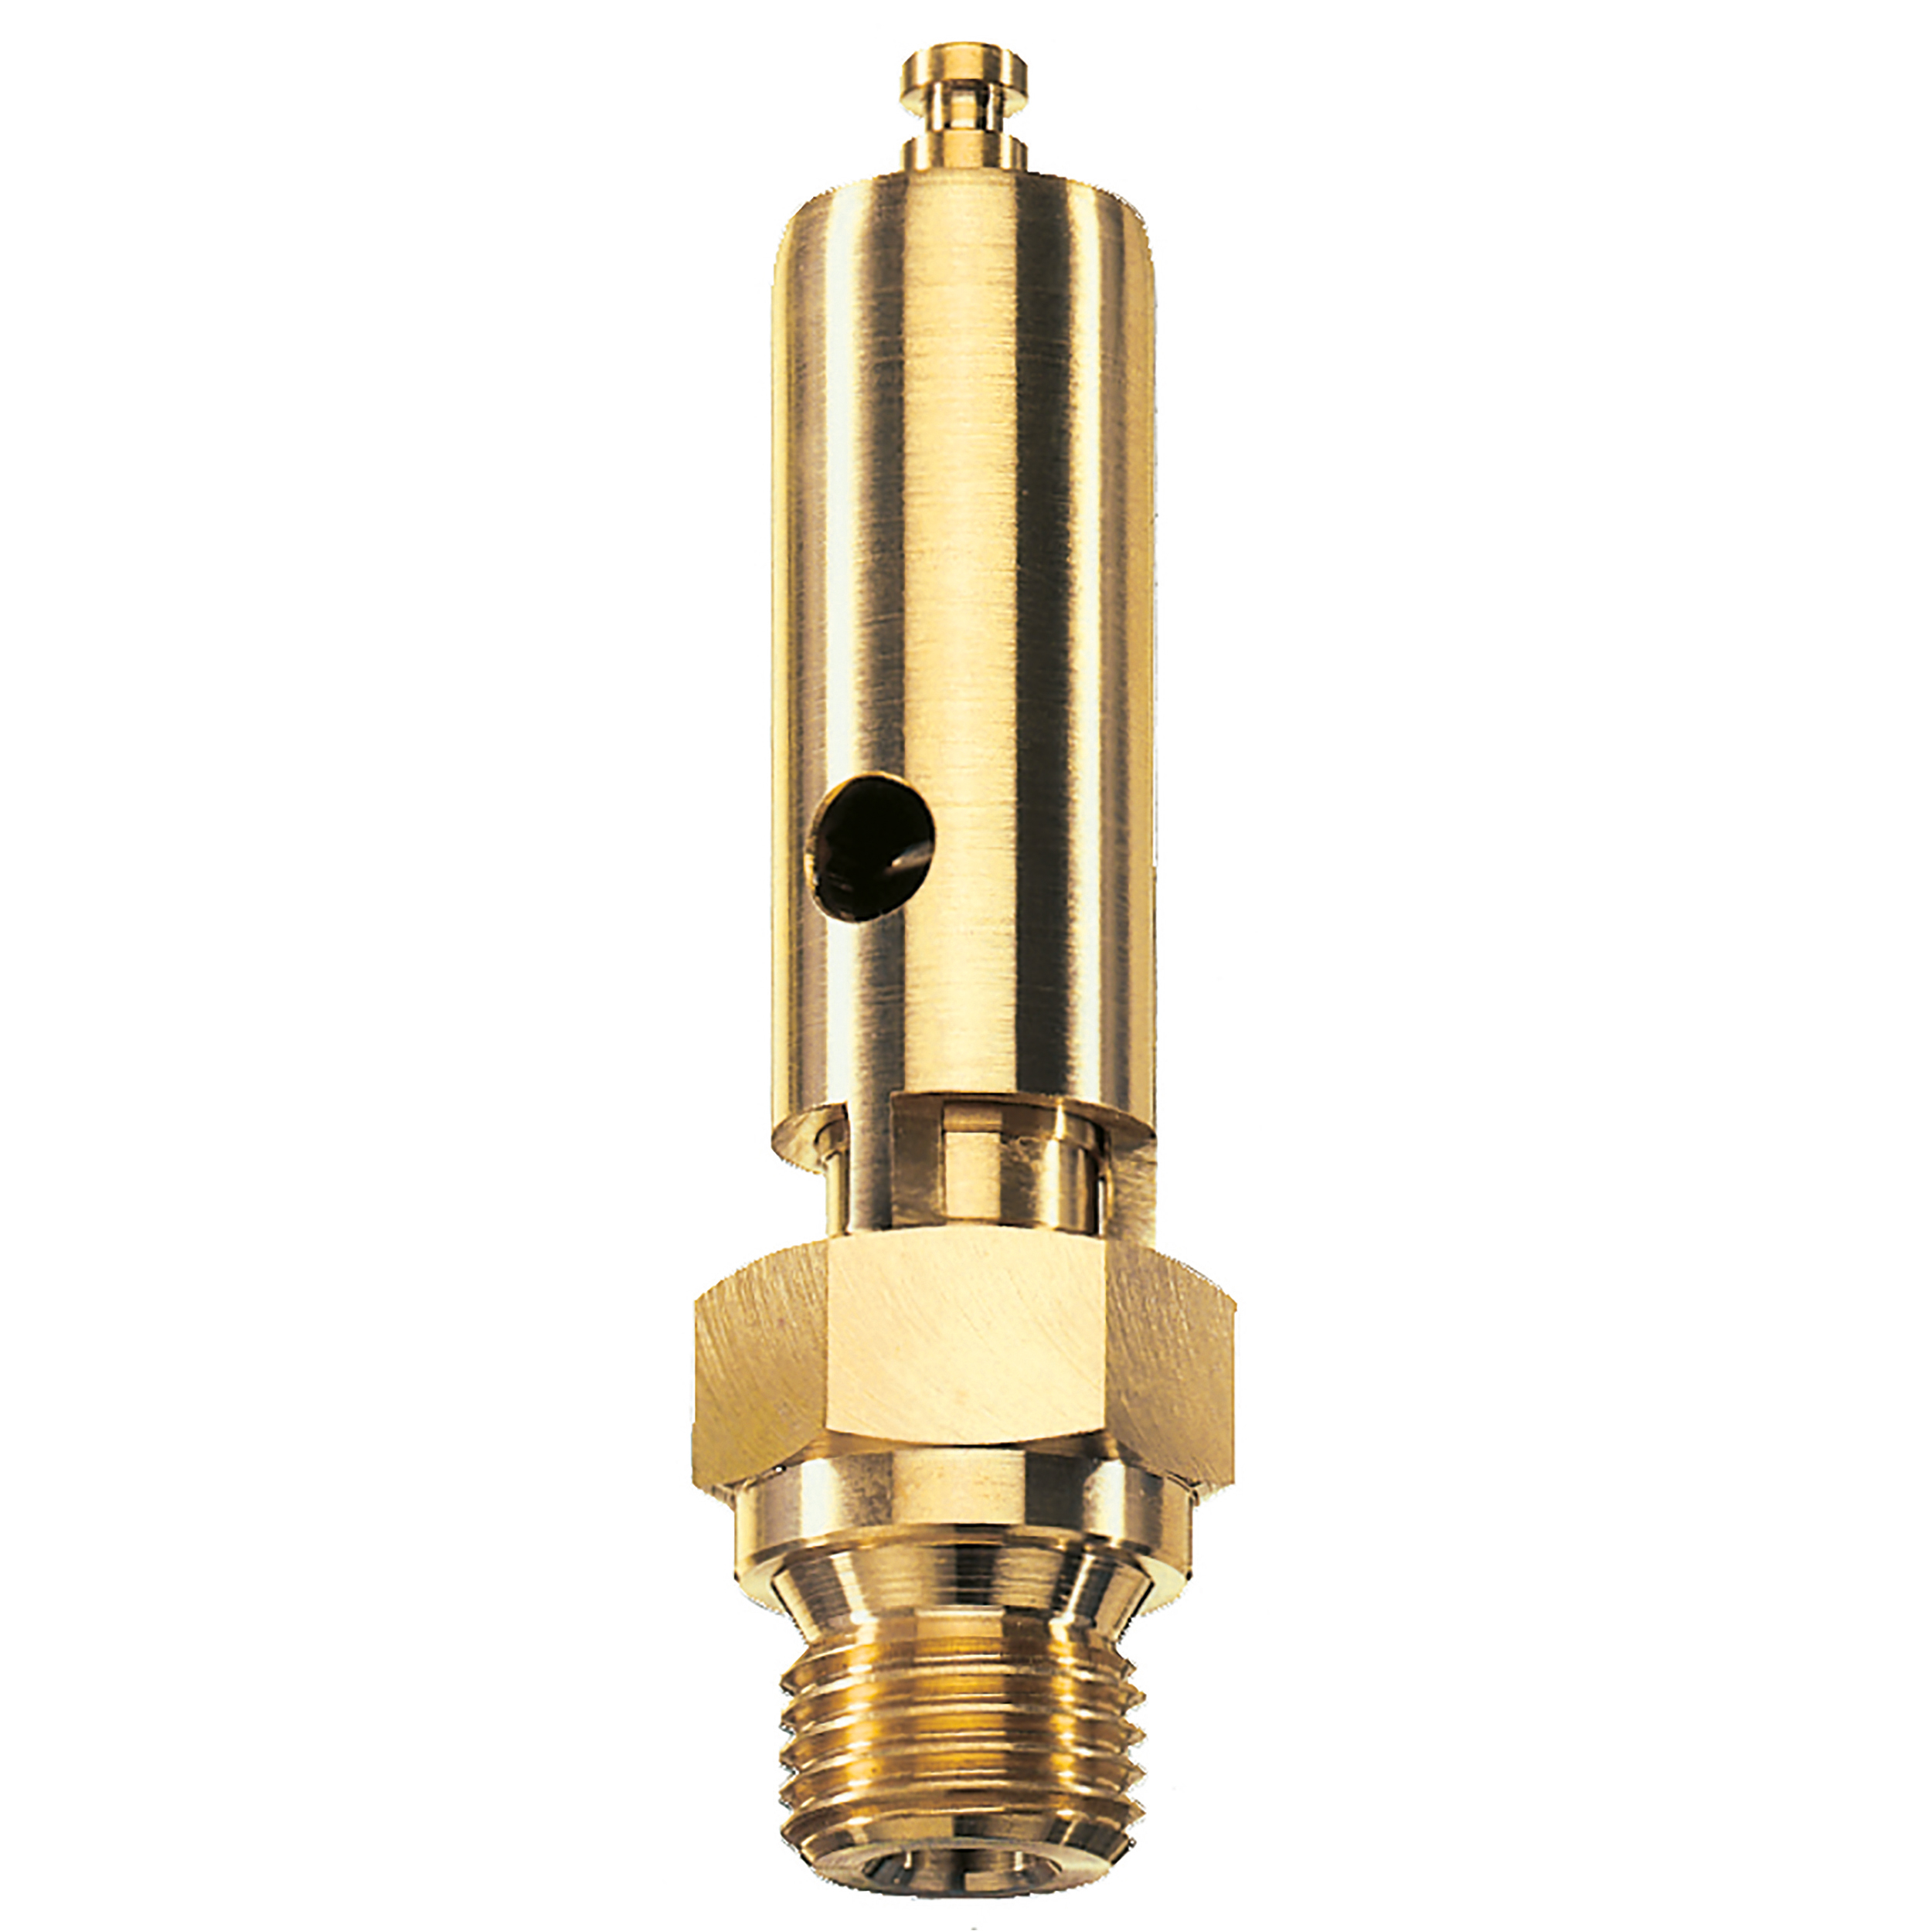 Savety valve component tested DN 6, G⅜, L: 60 mm, seal: FKM, set pressure: 13.8 bar (200,1 psi), TÜV approval